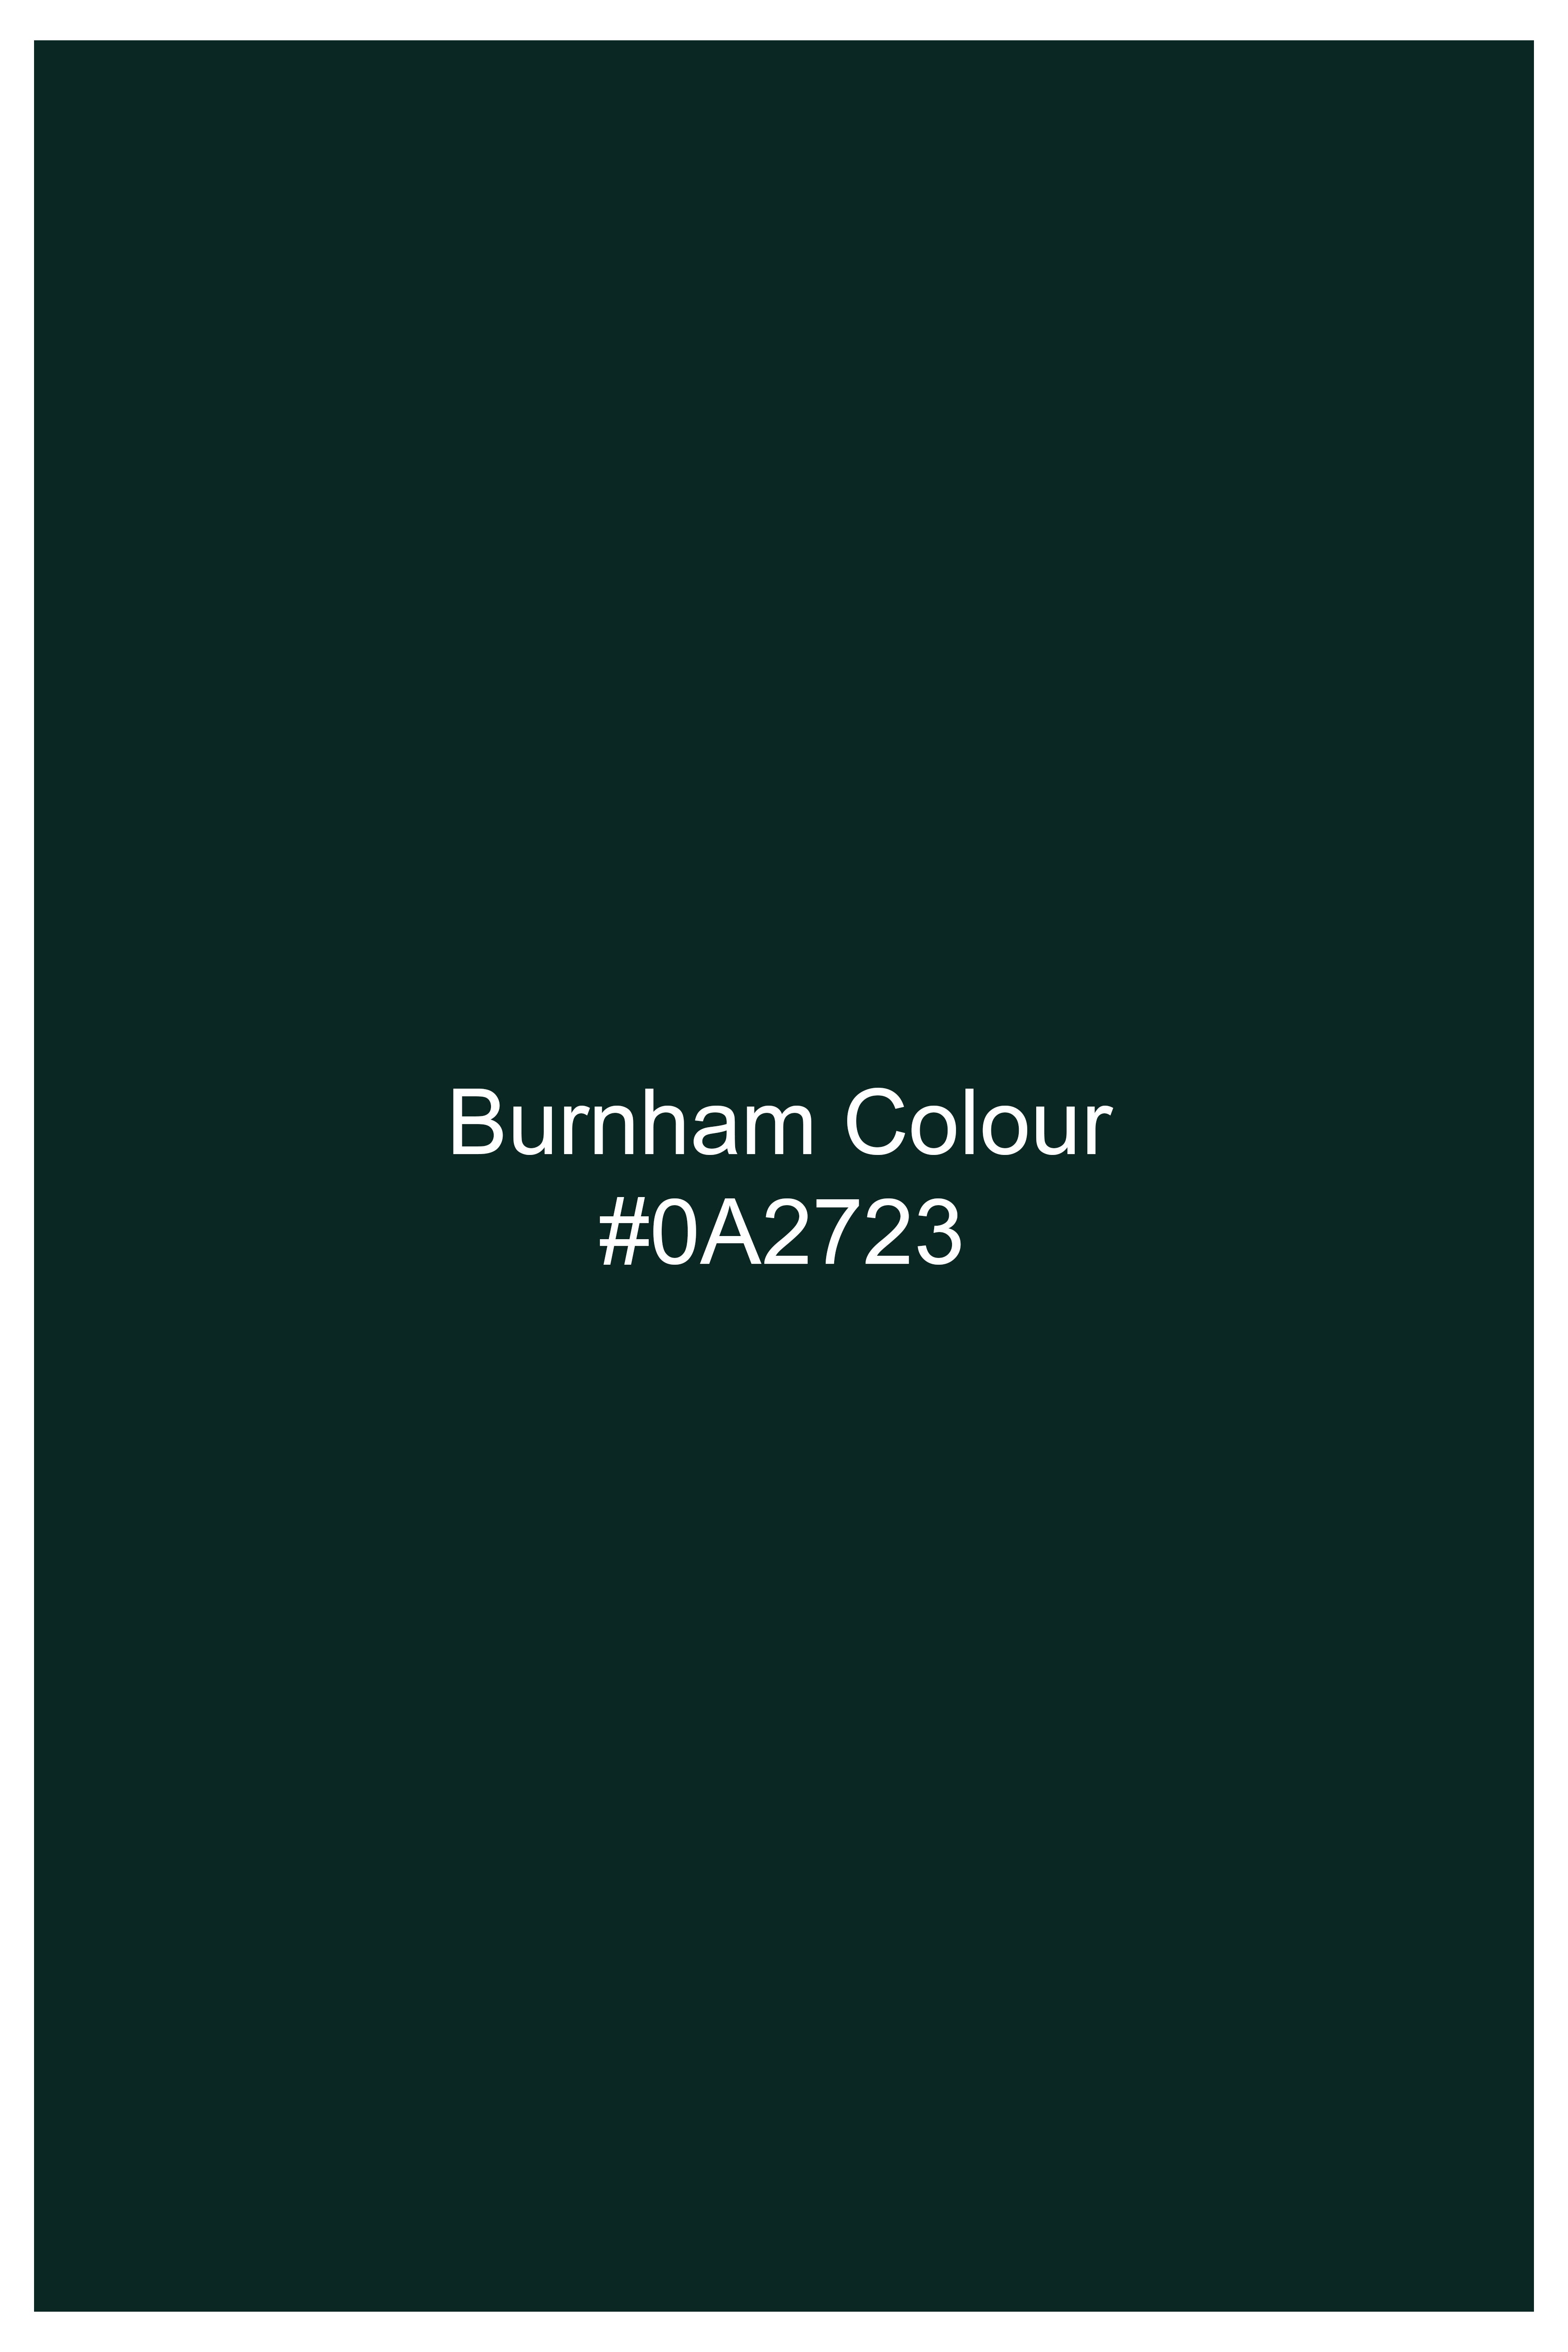 Burnham Green French Crown Printed Subtle Sheen Super Soft Premium Cotton Designer Shirt